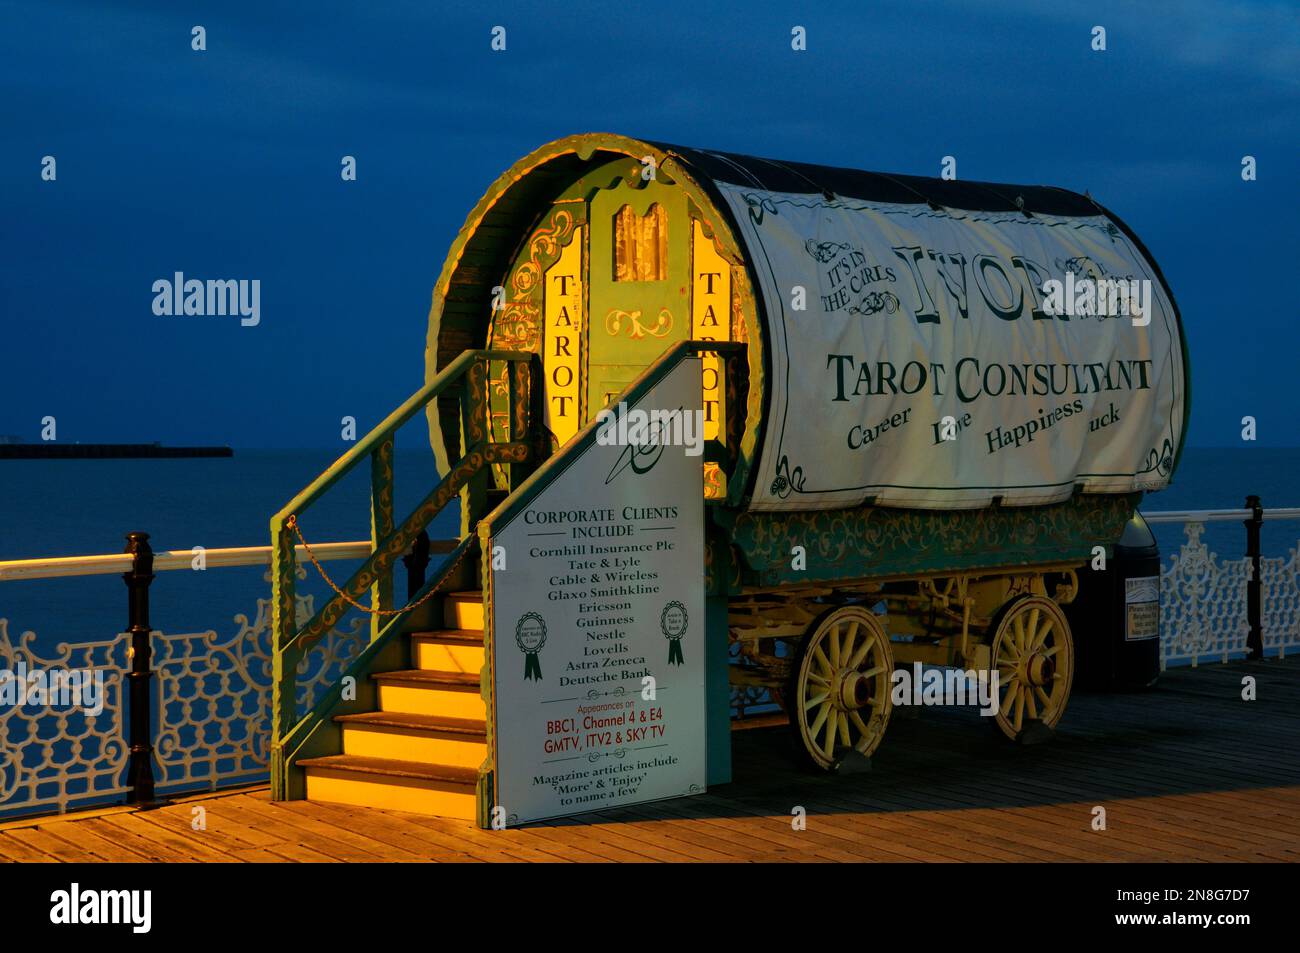 Le lecteur de Tarot Romany Caravan ou chariot tzigane éclairé par des lampadaires au crépuscule sur la promenade de Brighton Palace Pier, East Sussex, Angleterre, Royaume-Uni Banque D'Images